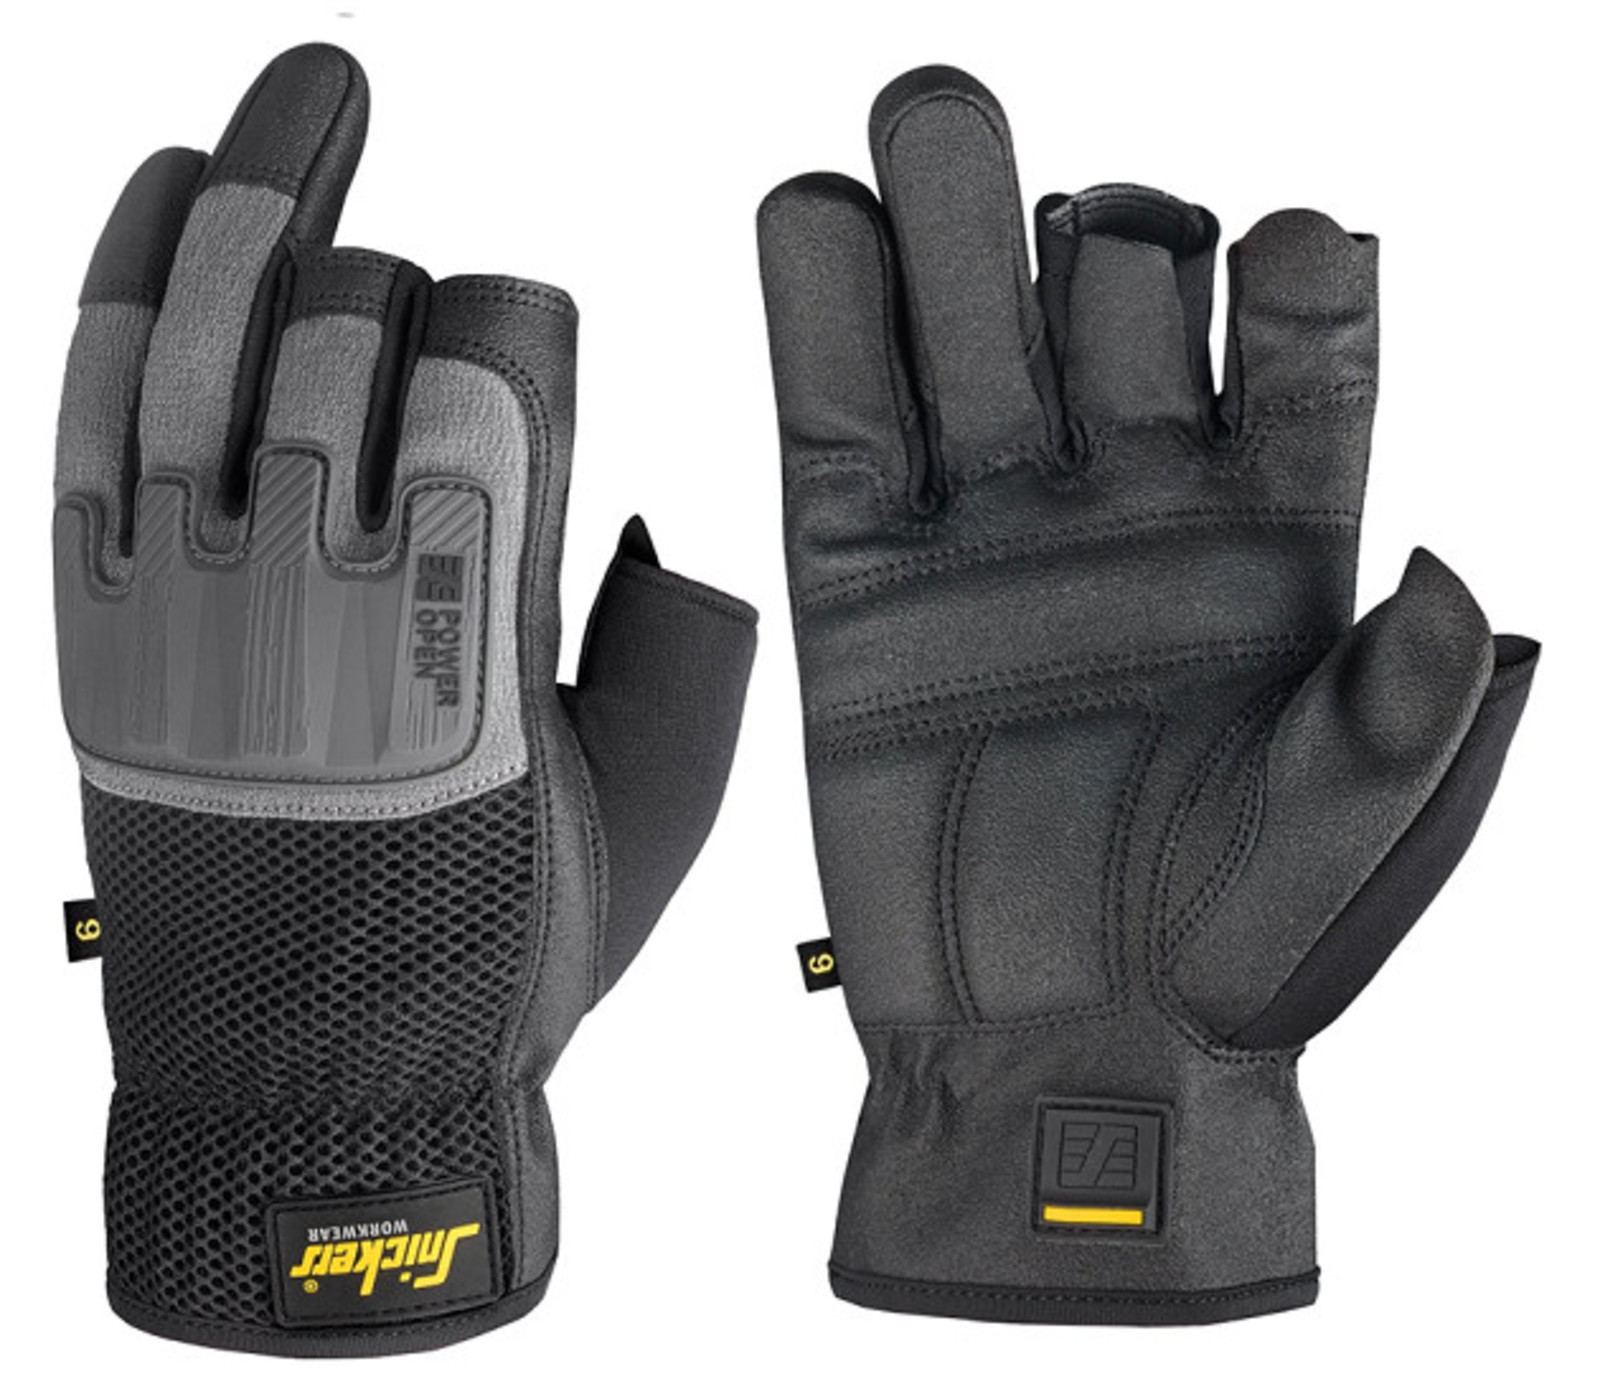 Ochranné rukavice Snickers® Power Open bez prstov - veľkosť: 10/XL, farba: sivá/čierna